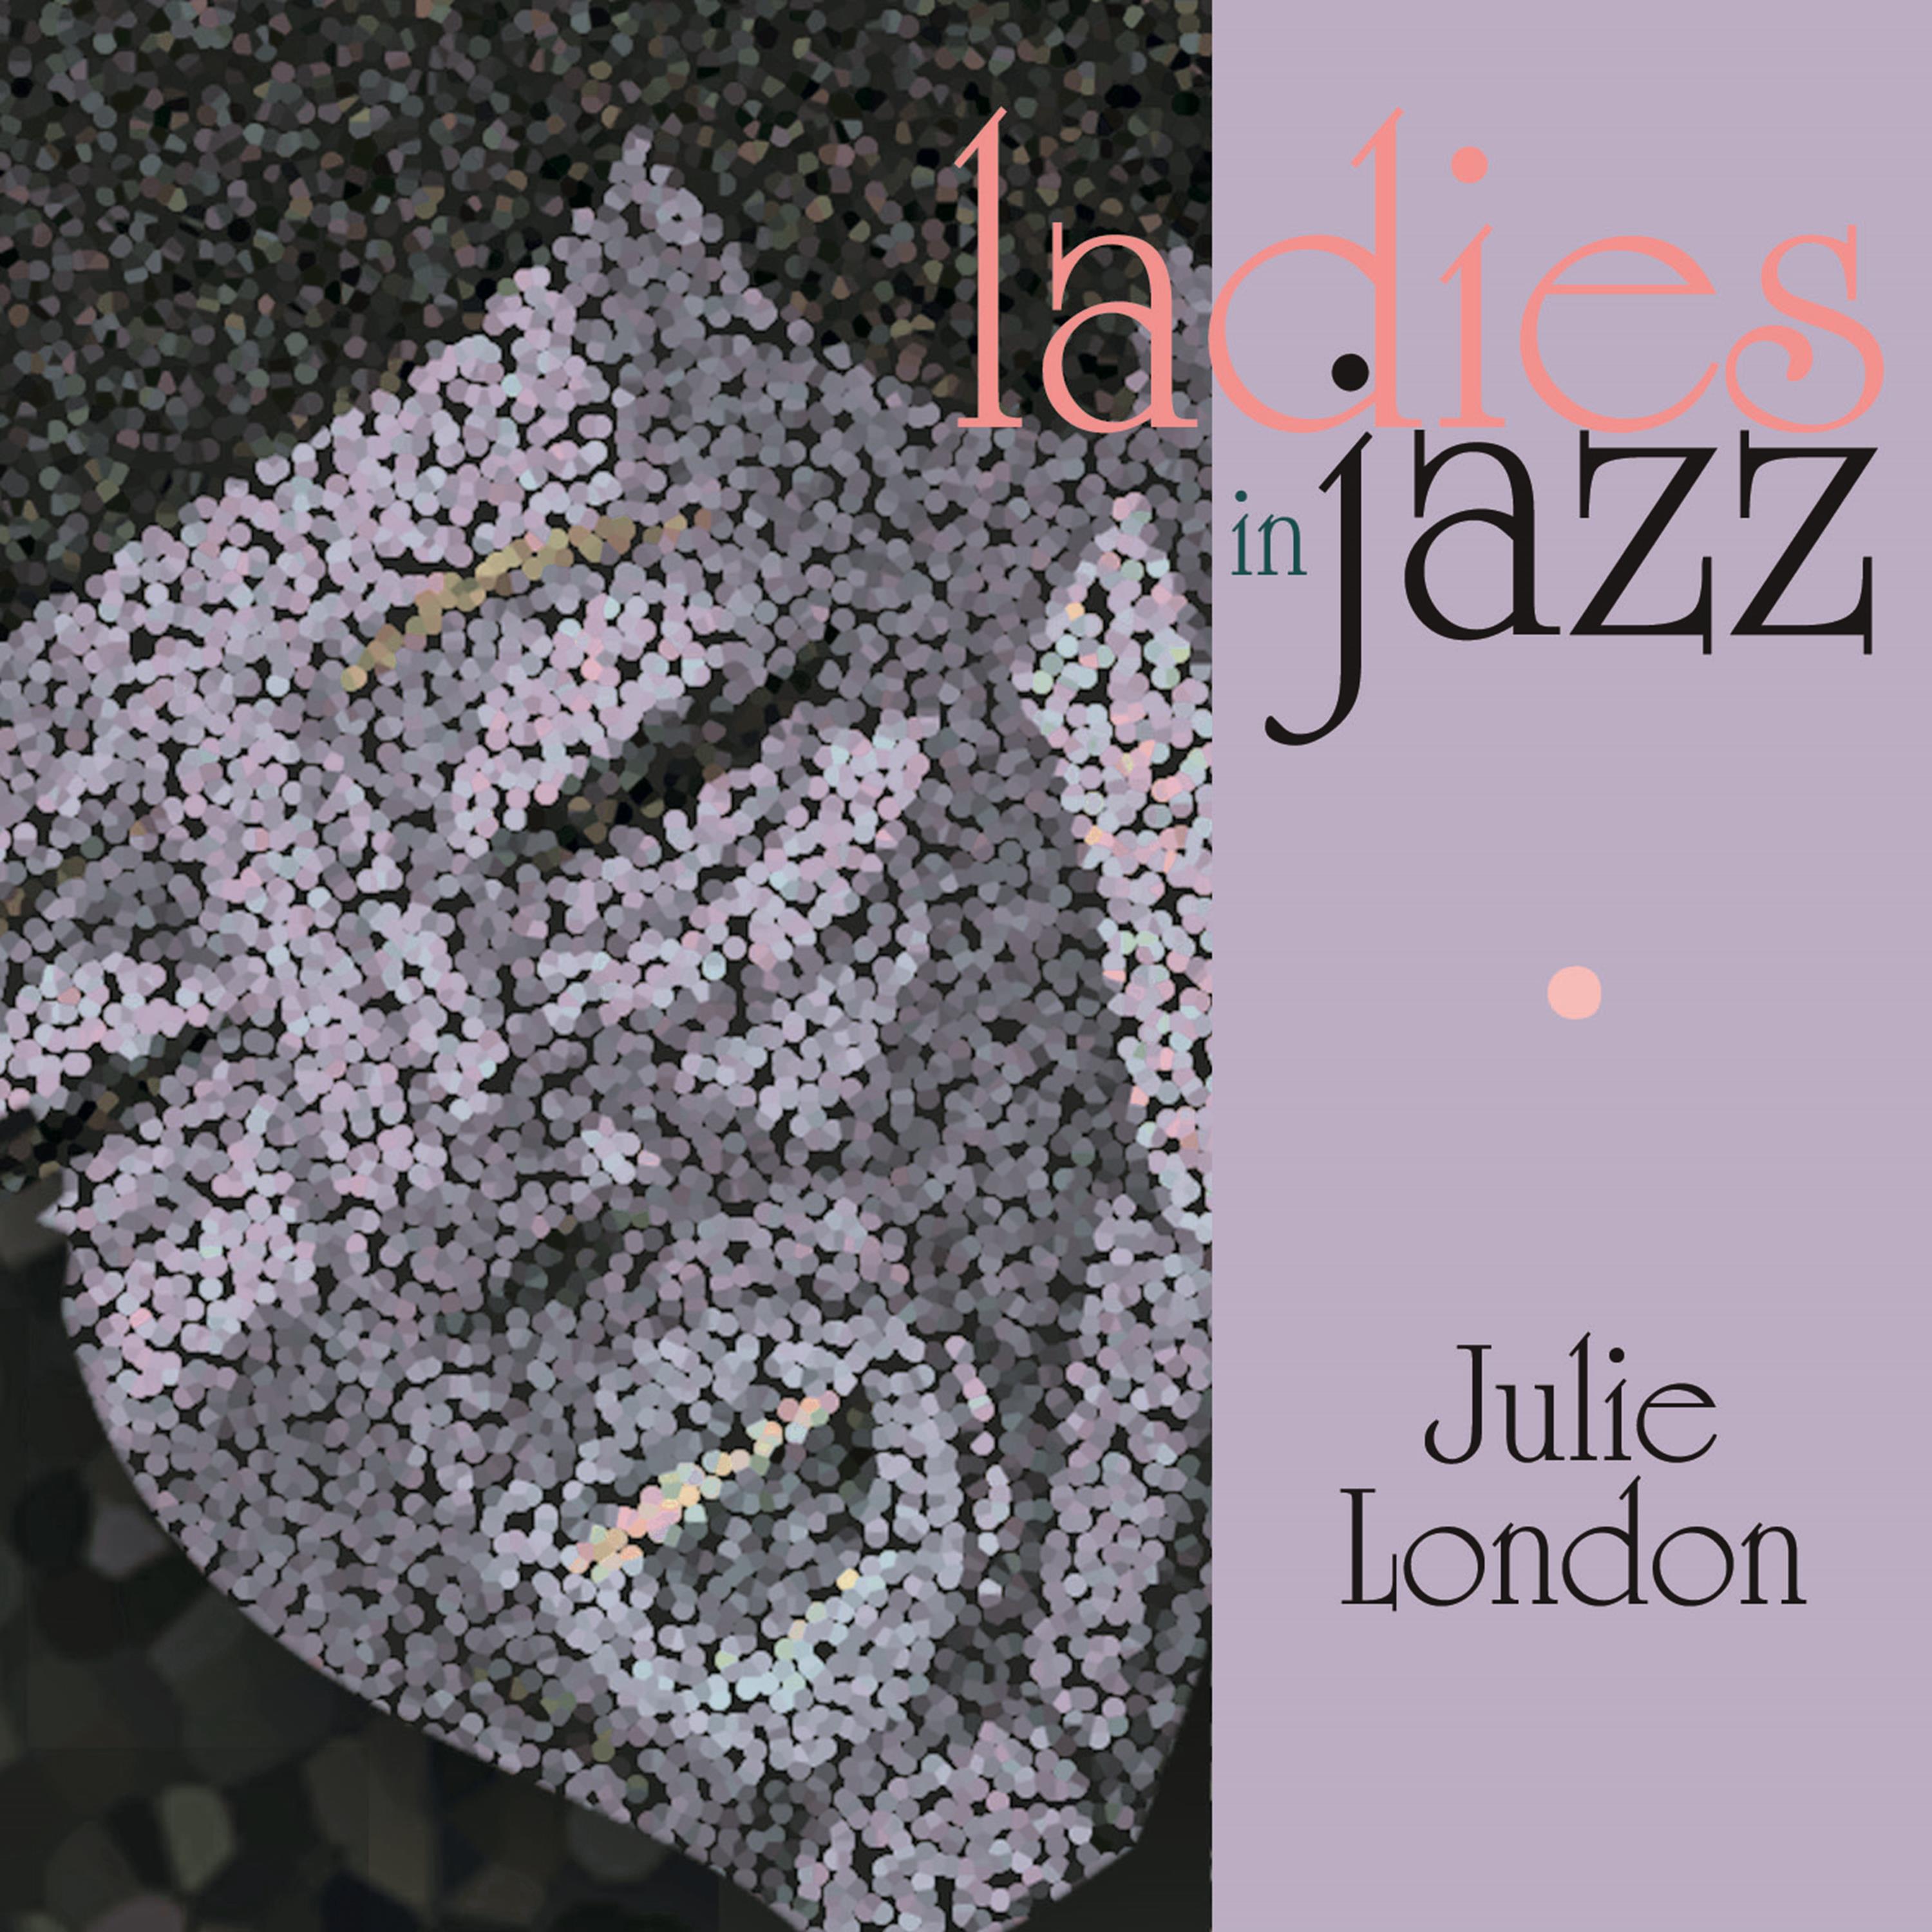 Ladies in Jazz - Julie London